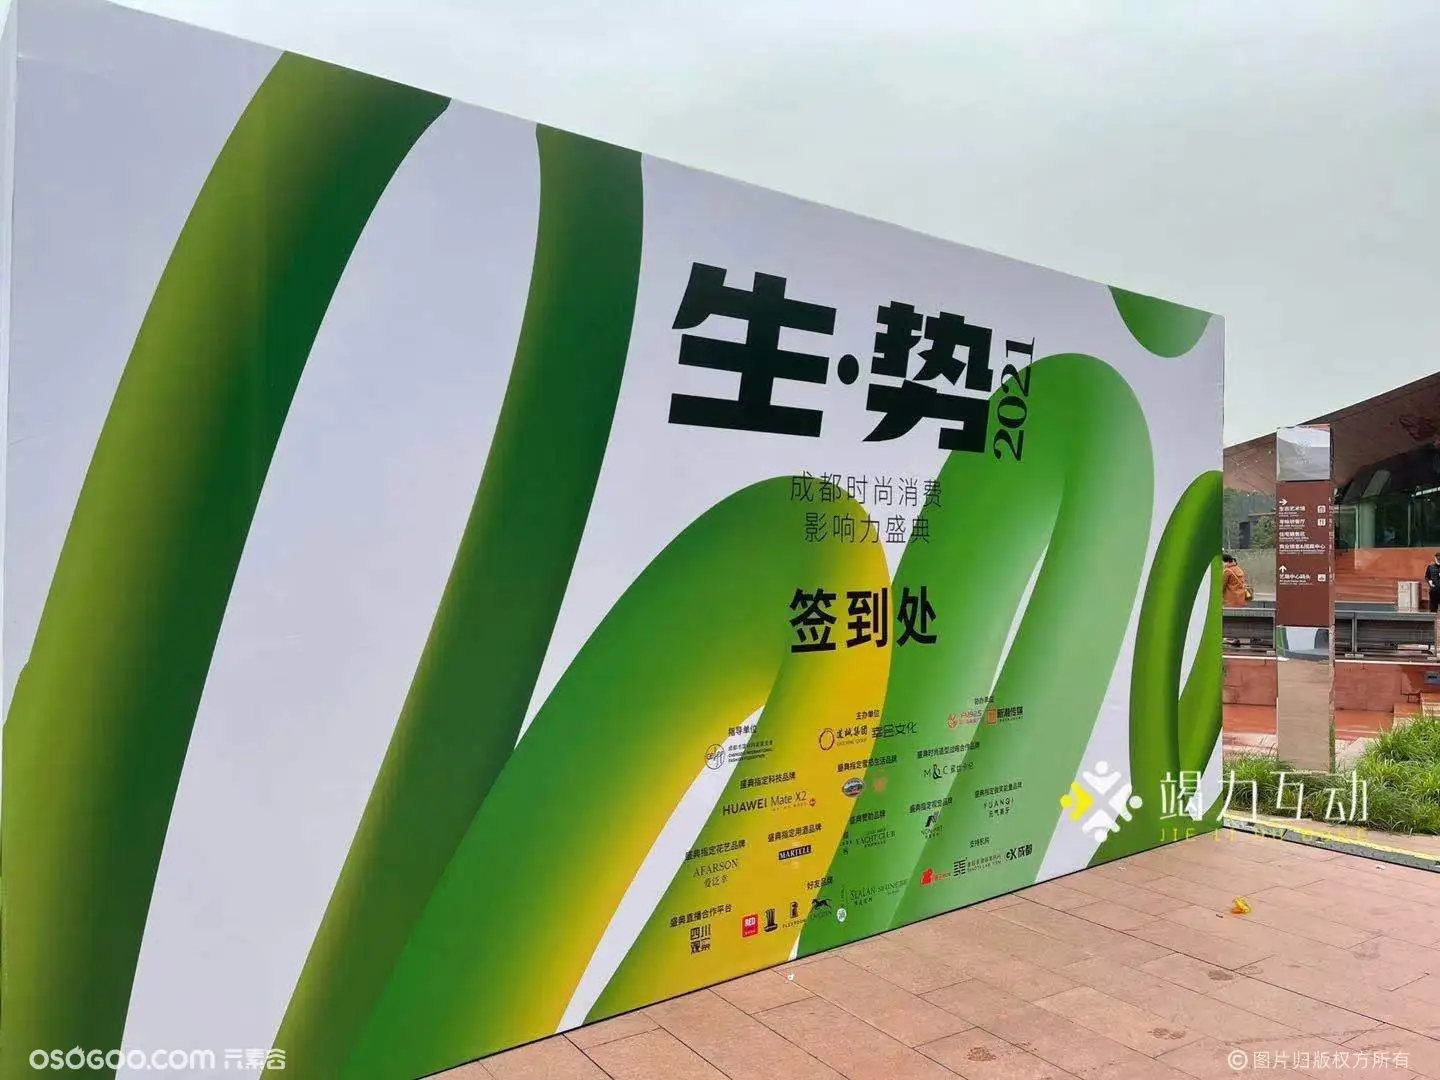 #成都时尚消费影响力盛典/360旋转升格拍照明显互动